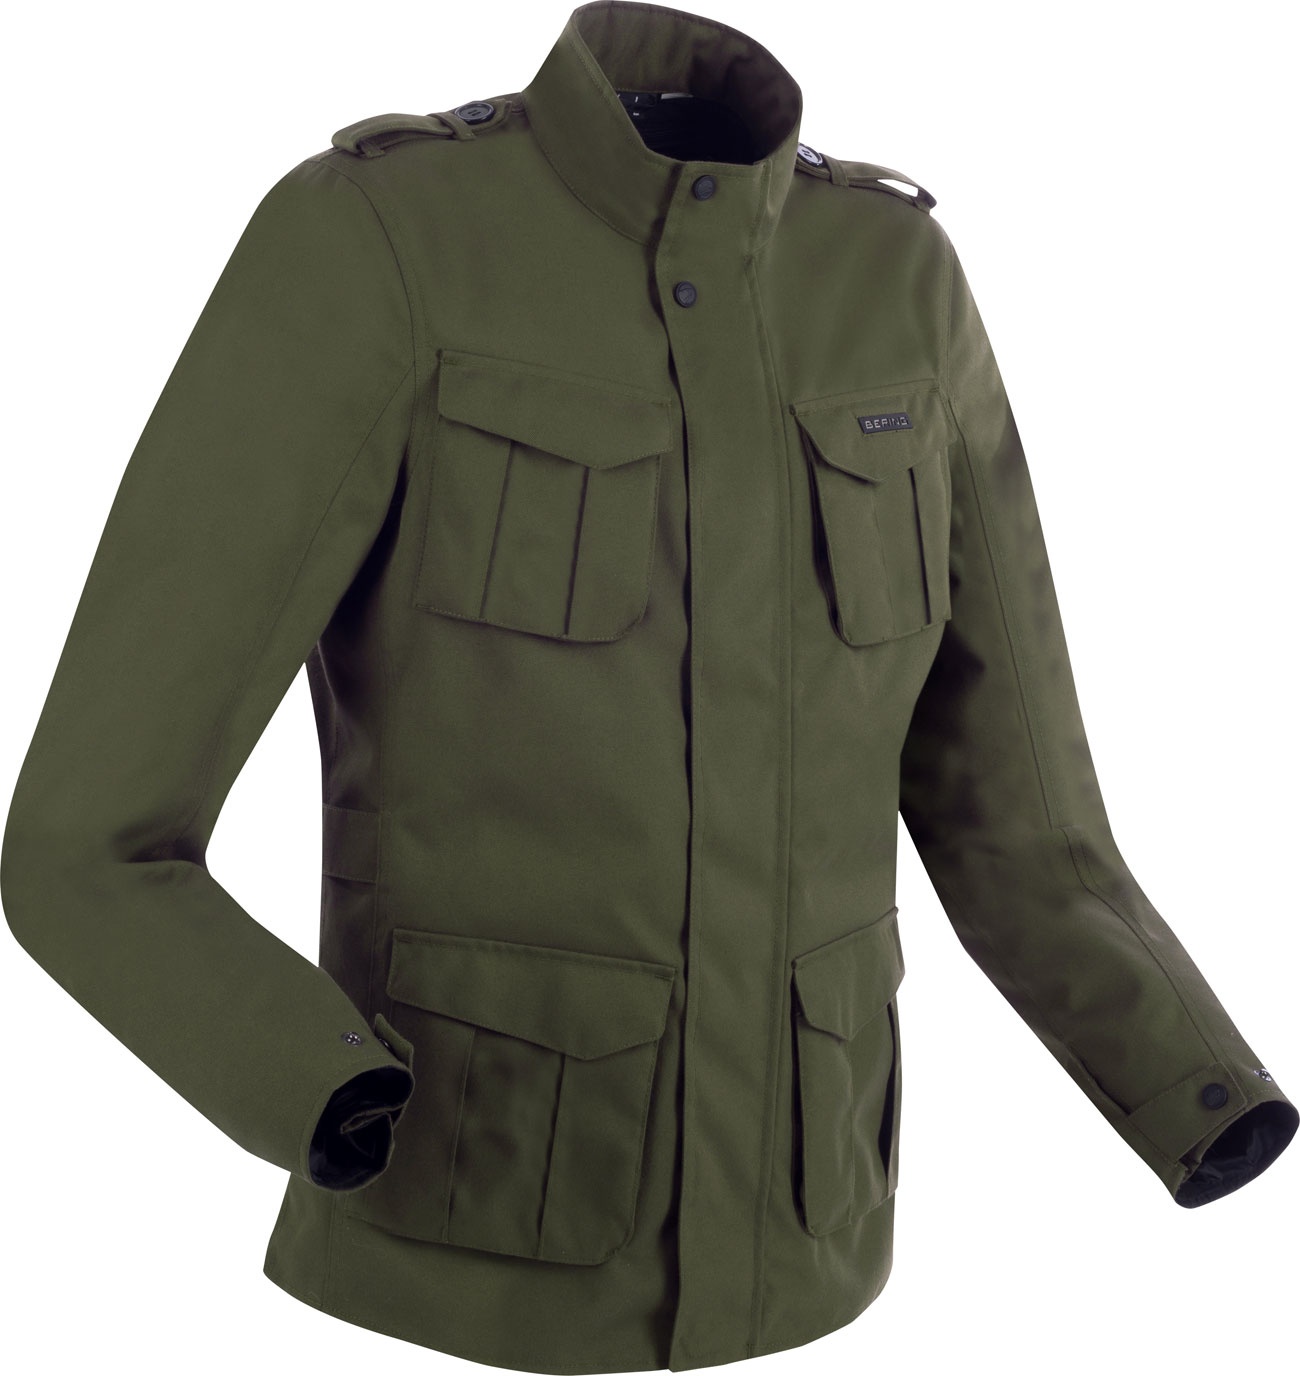 Bering Norris Evo, veste textile imperméable - Olive - XL